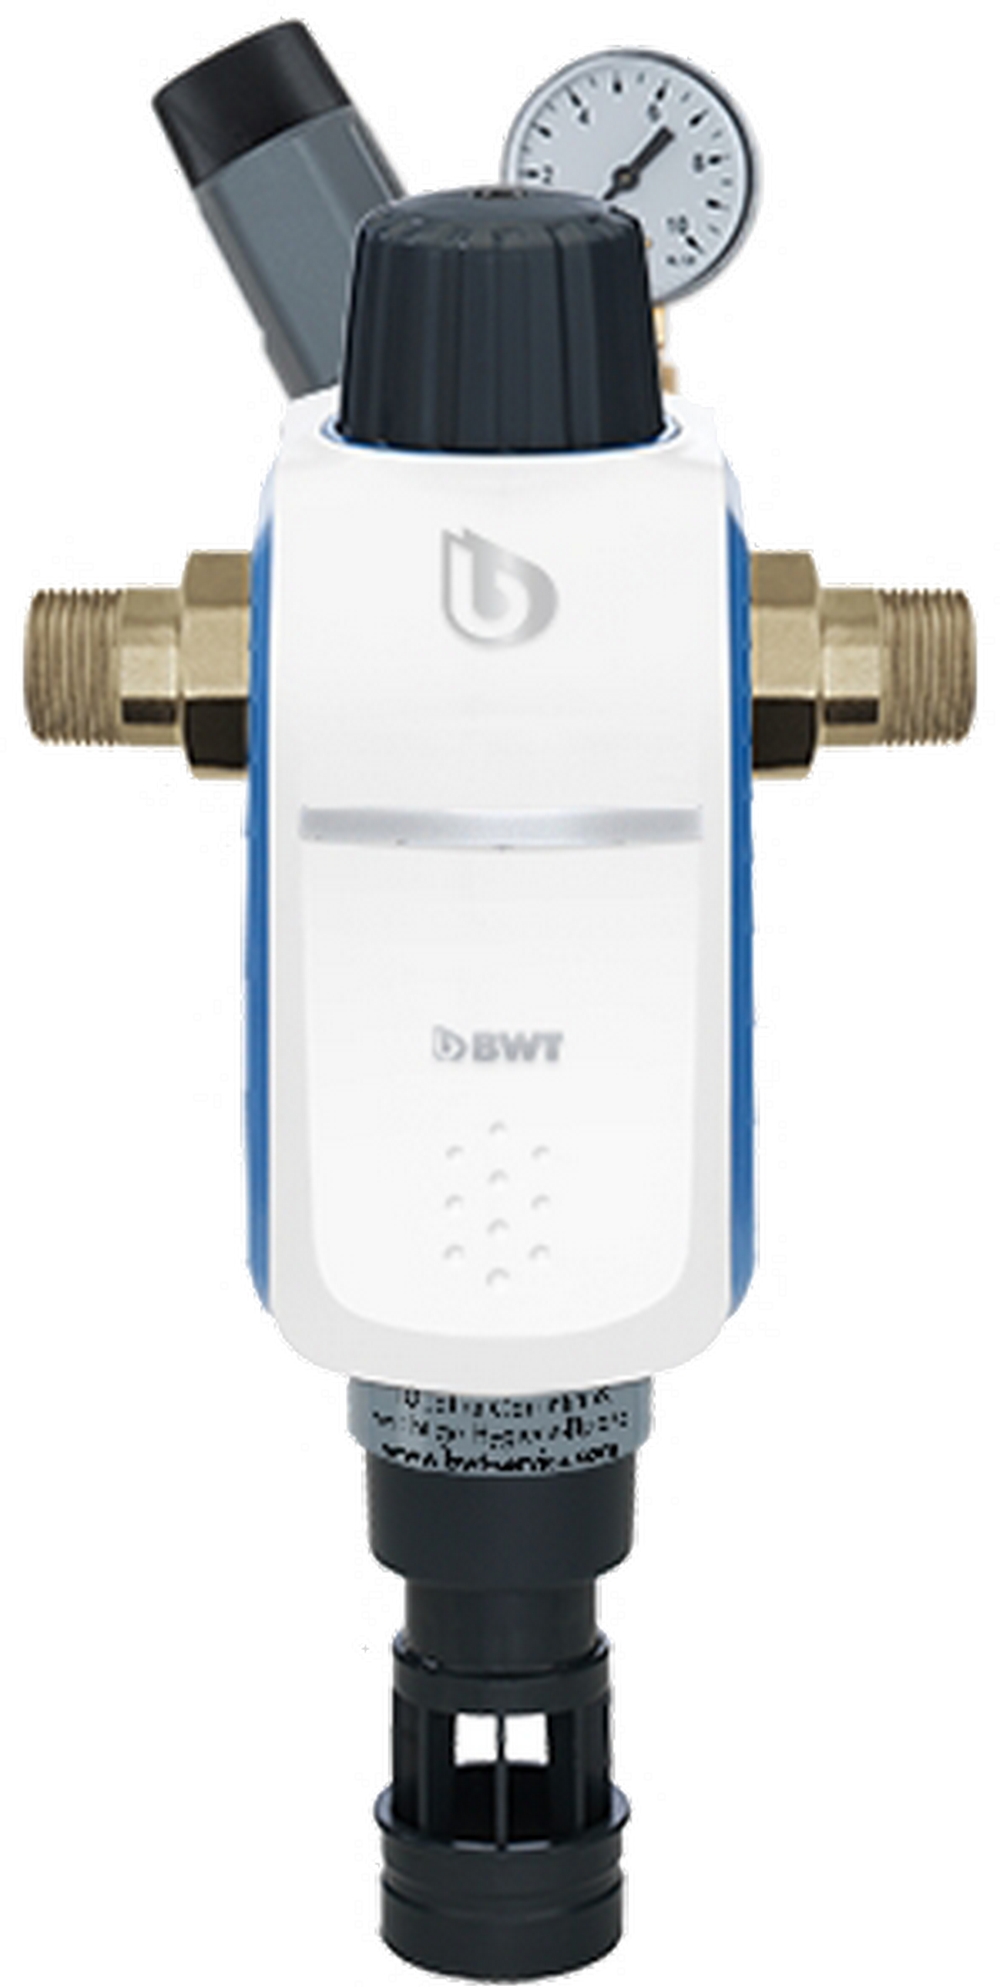 Отзывы фильтр на 90 микрон (90 мкм) BWT R1 HWS 3/4" с редуктором давления 840369 в Украине